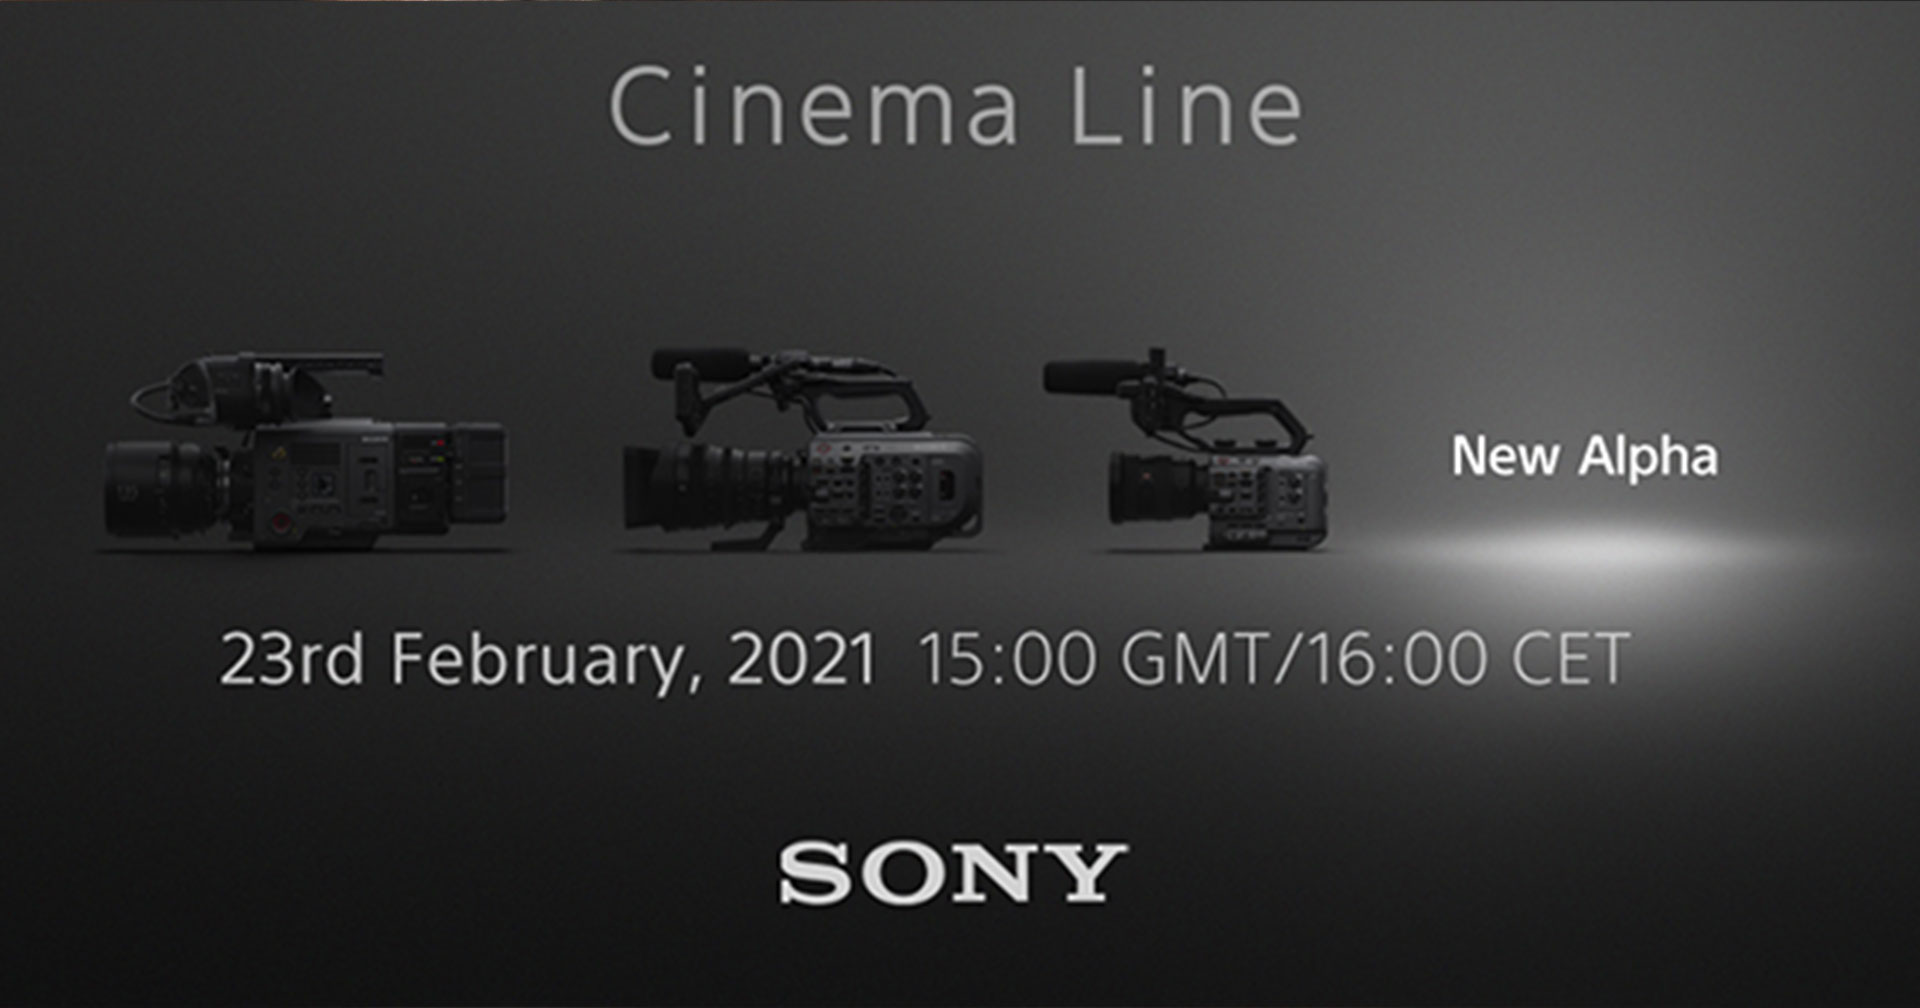 Sony เตรียมเปิดตัว FX3 กล้องถ่ายภาพยนตร์ Cinema Line วันที่ 23 กุมภาพันธ์นี้!